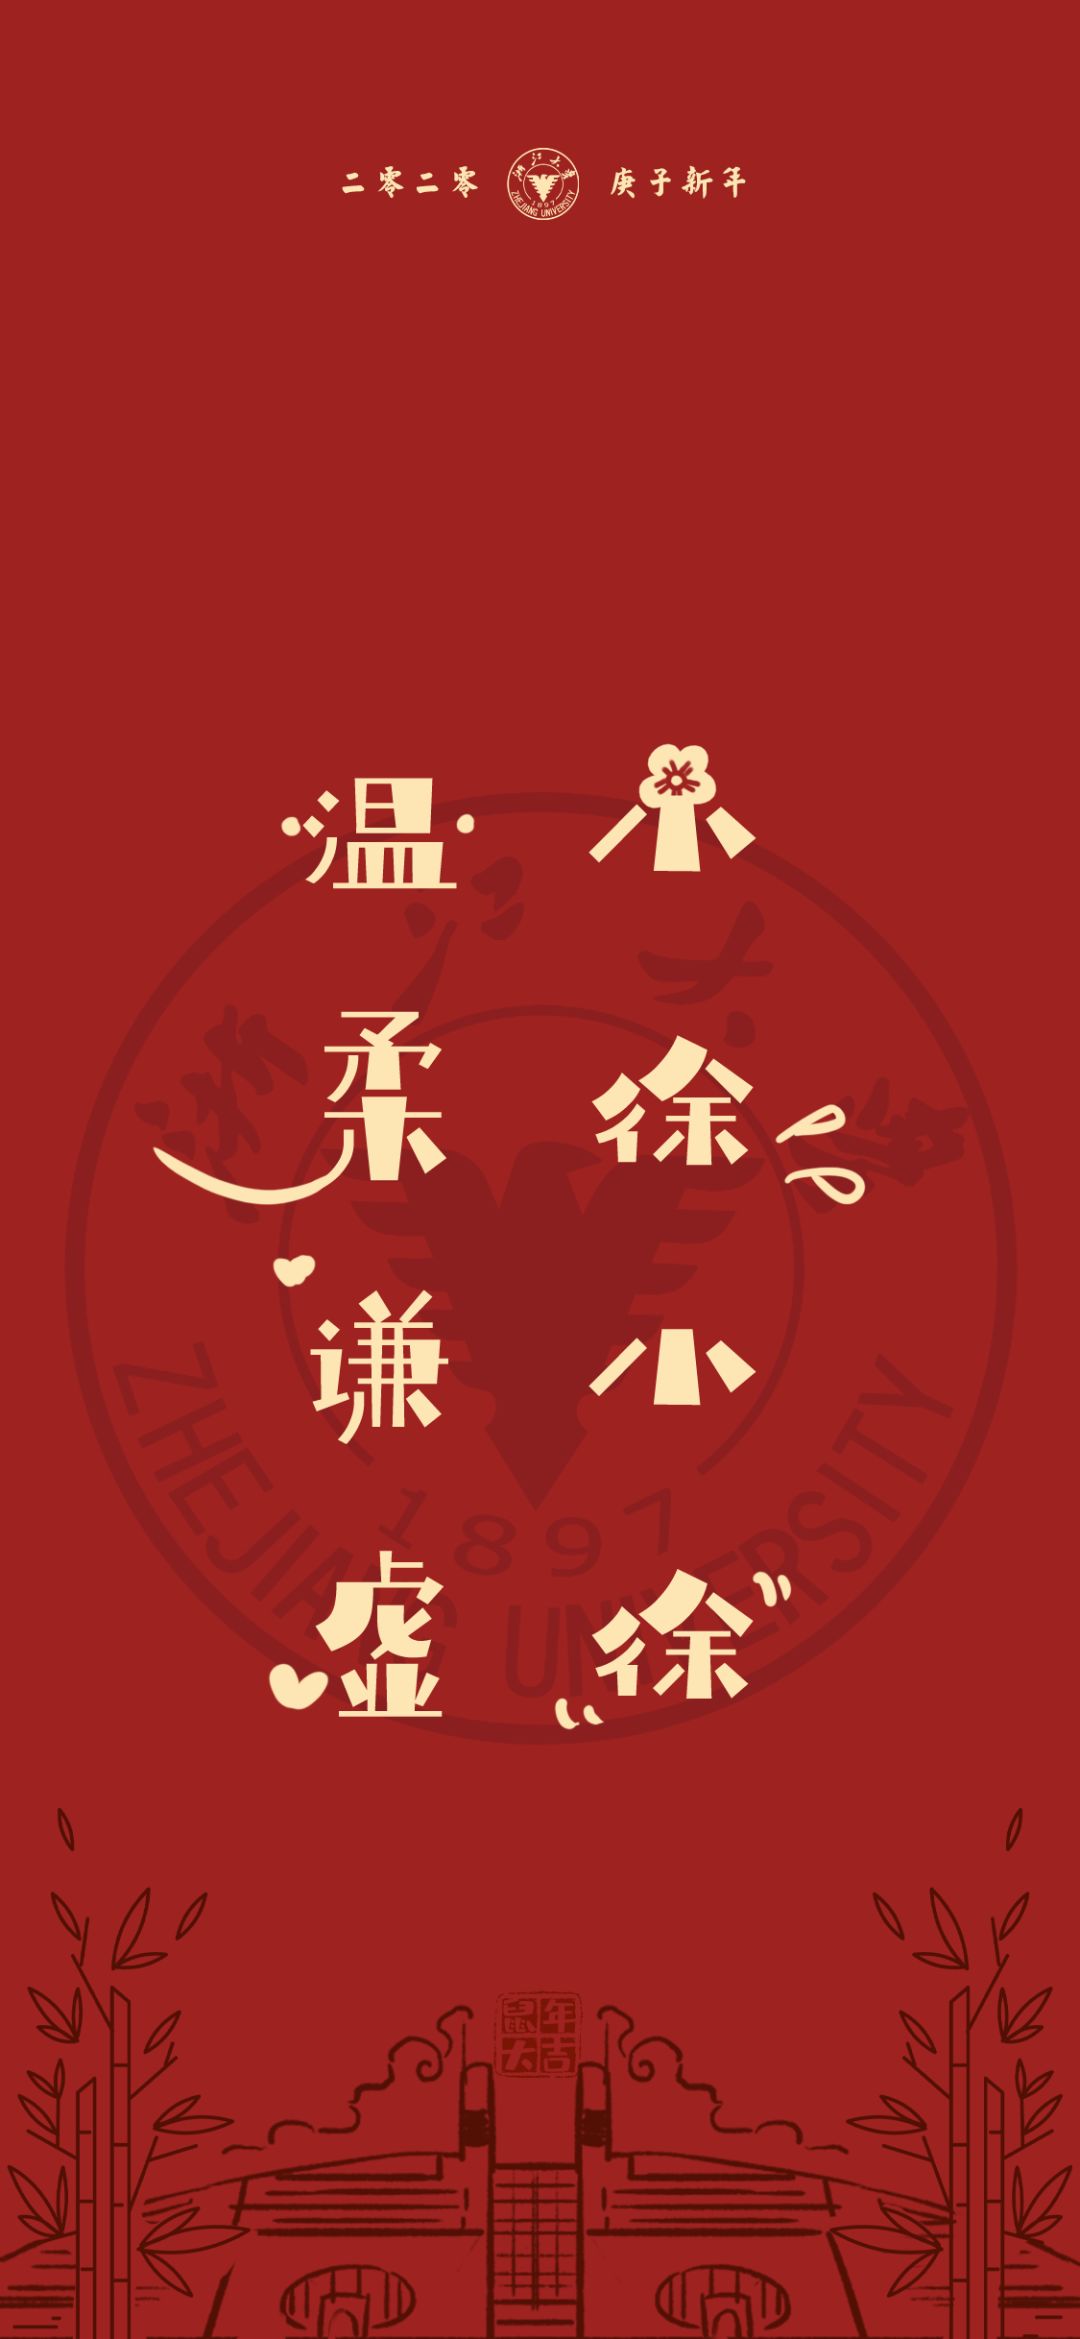 浙江大学为你量身定制的"姓氏壁纸"来了,换上它,接好运!